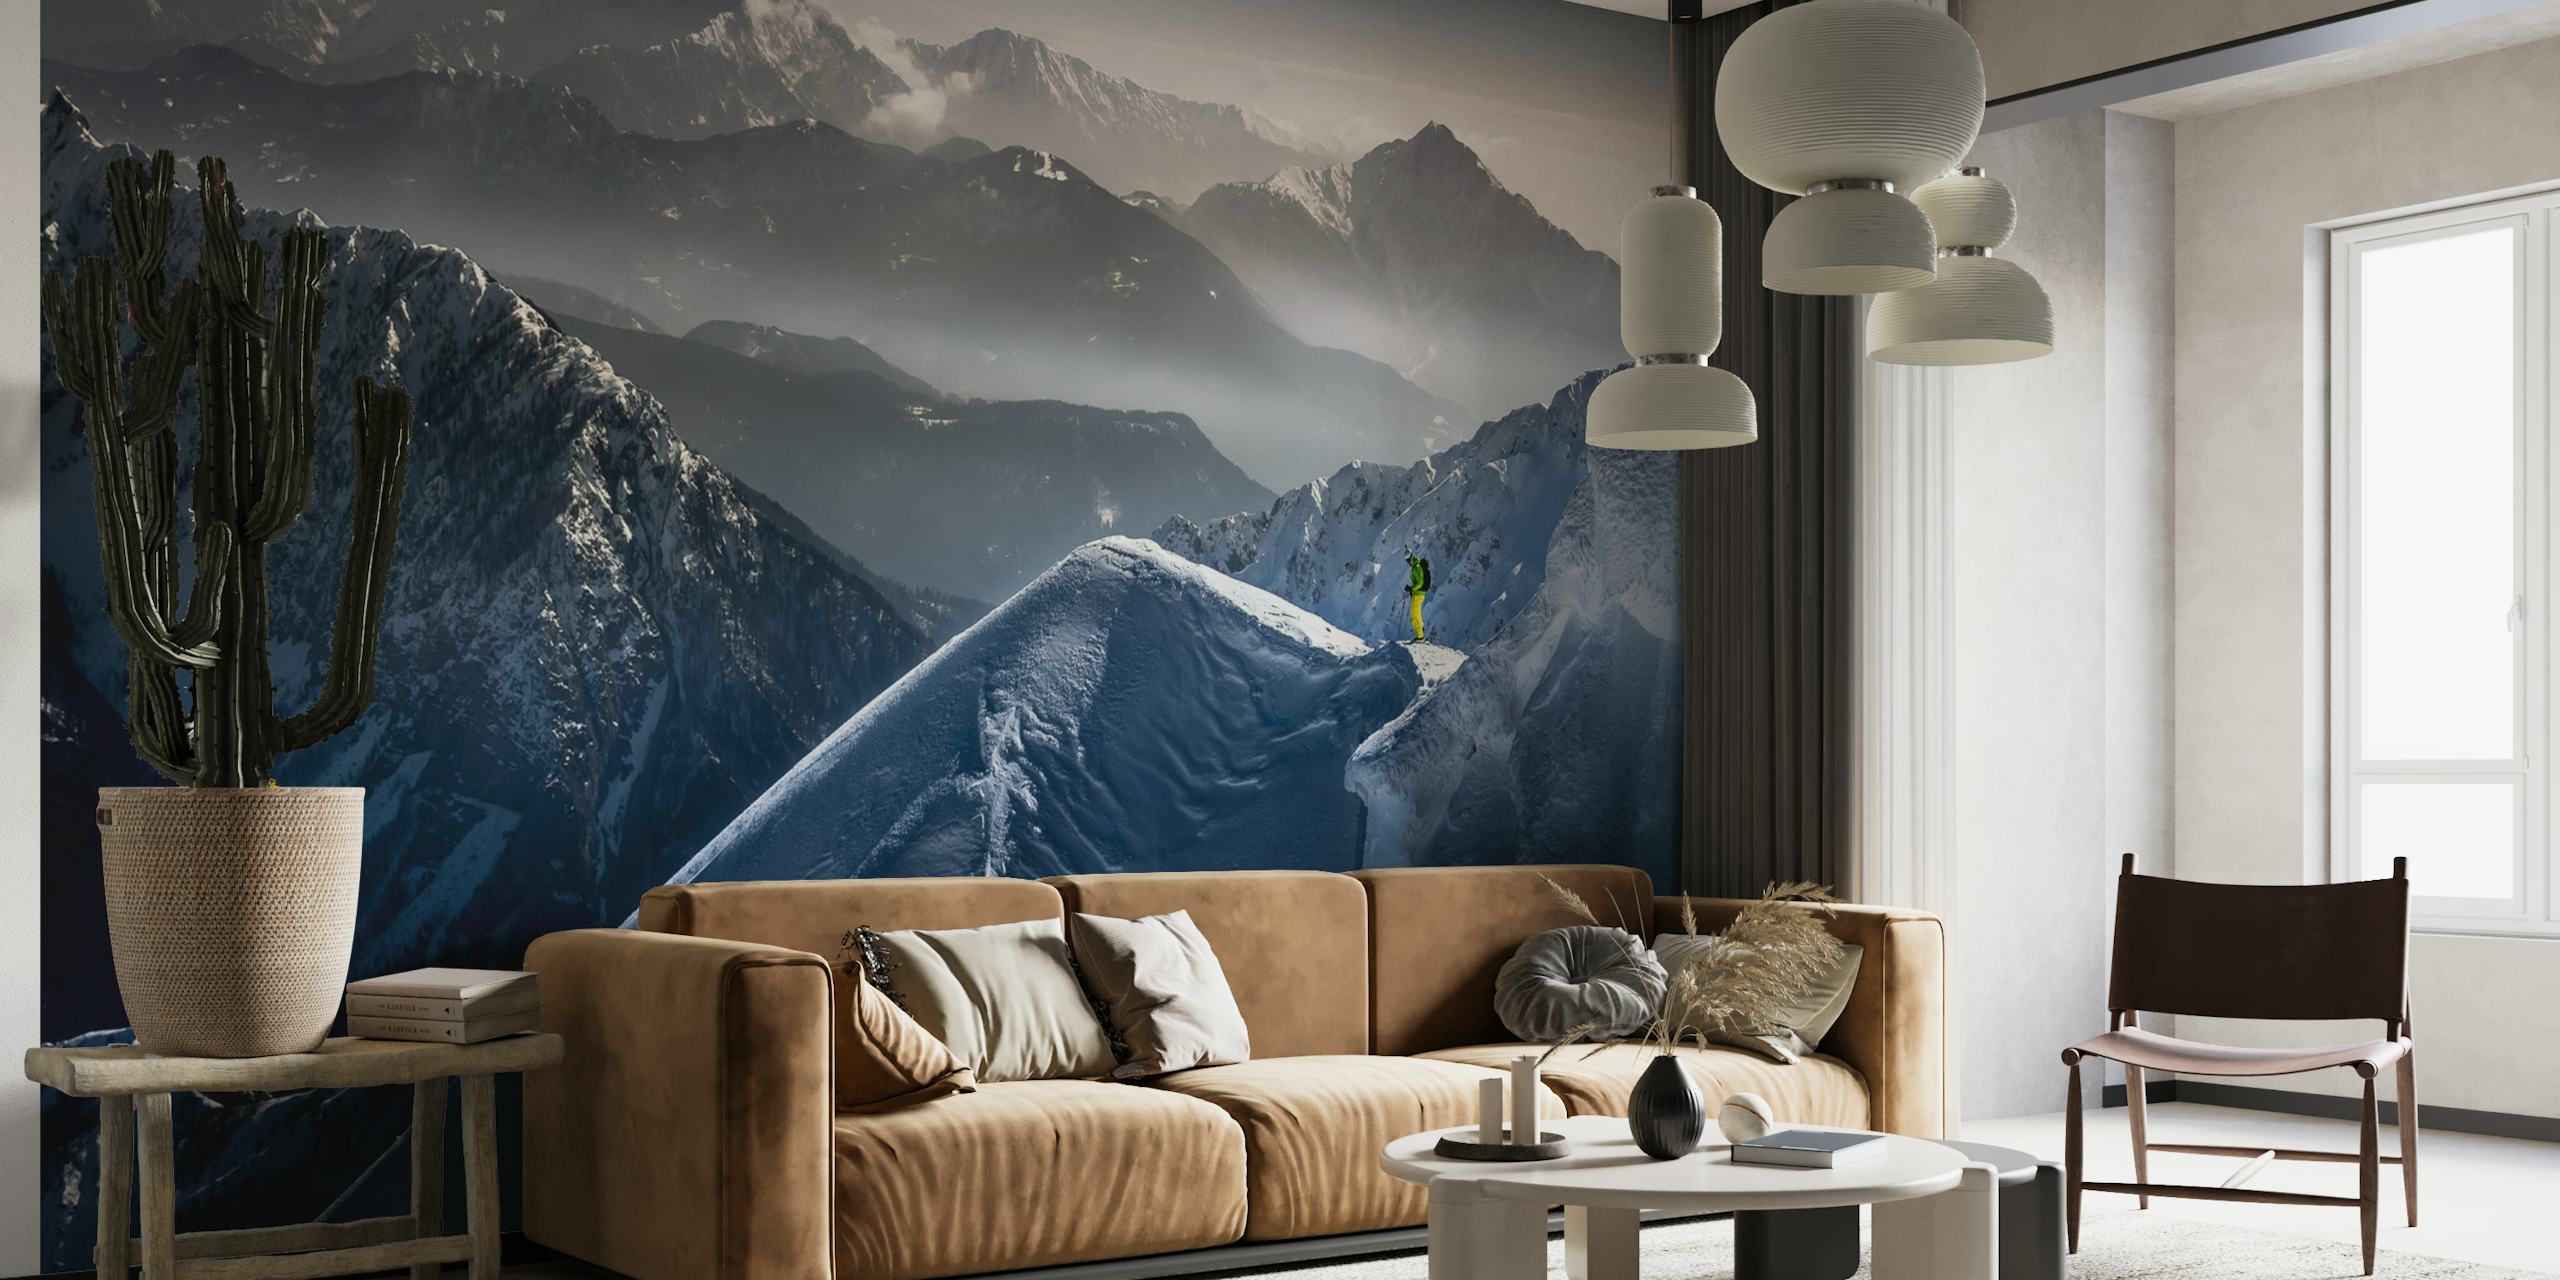 Skieur au sommet d'une montagne, fresque murale « Silence avant la descente » avec toile de fond de montagne brumeuse